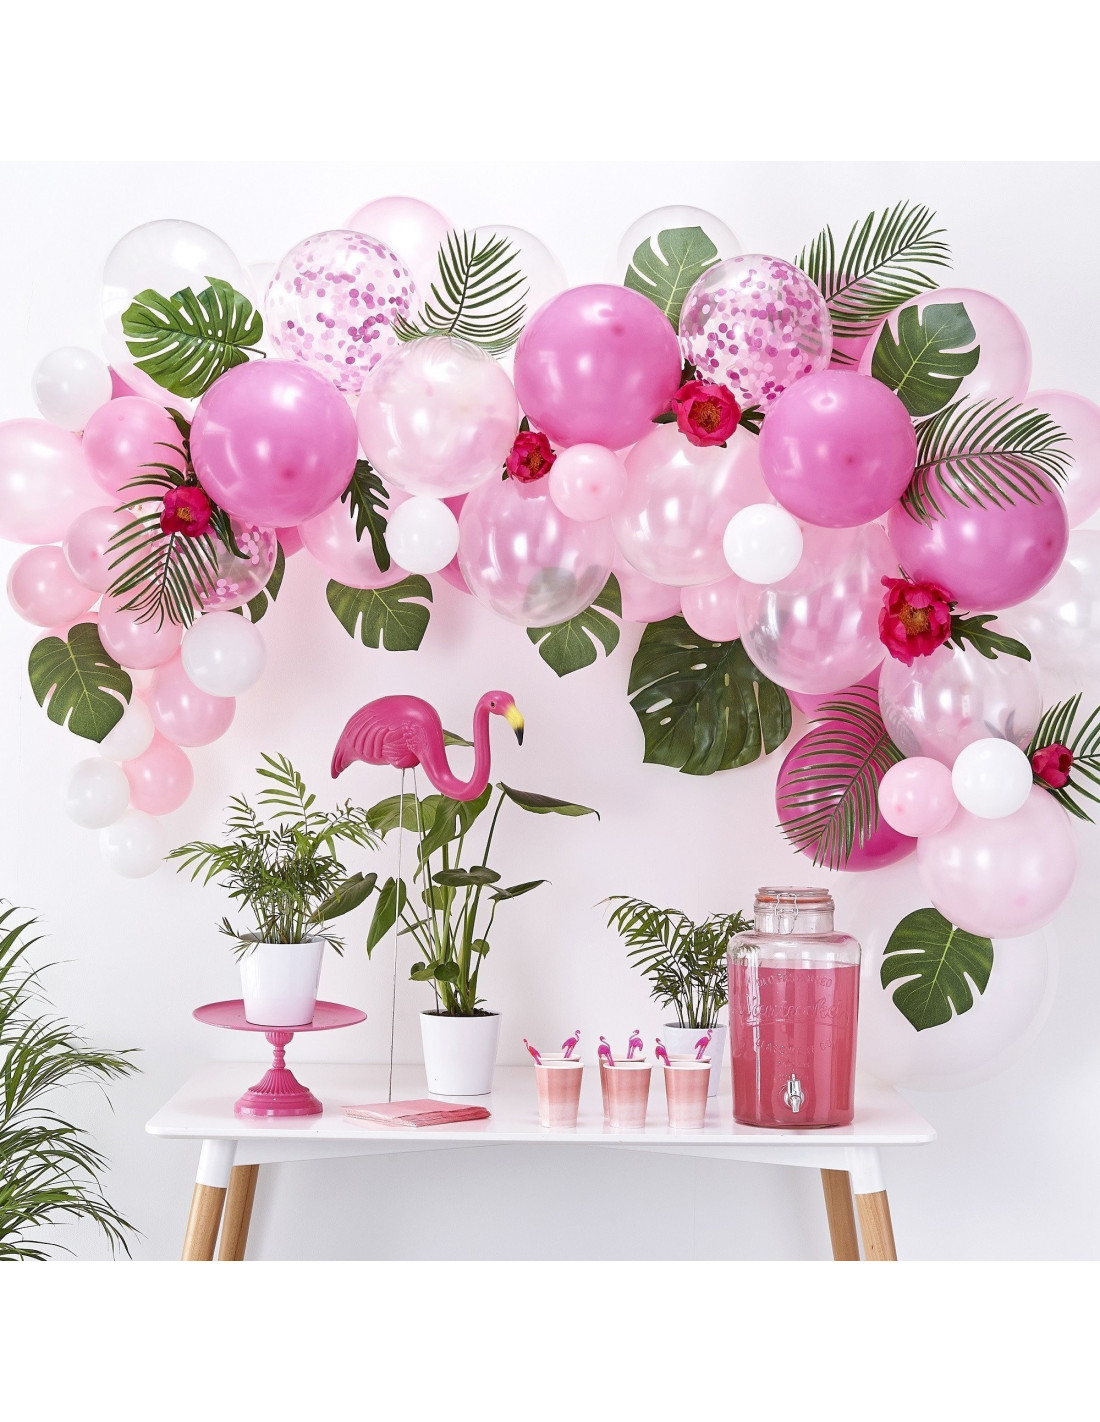 Kit Arche Ballons roses, Décoration Fêtes - Les Bambetises